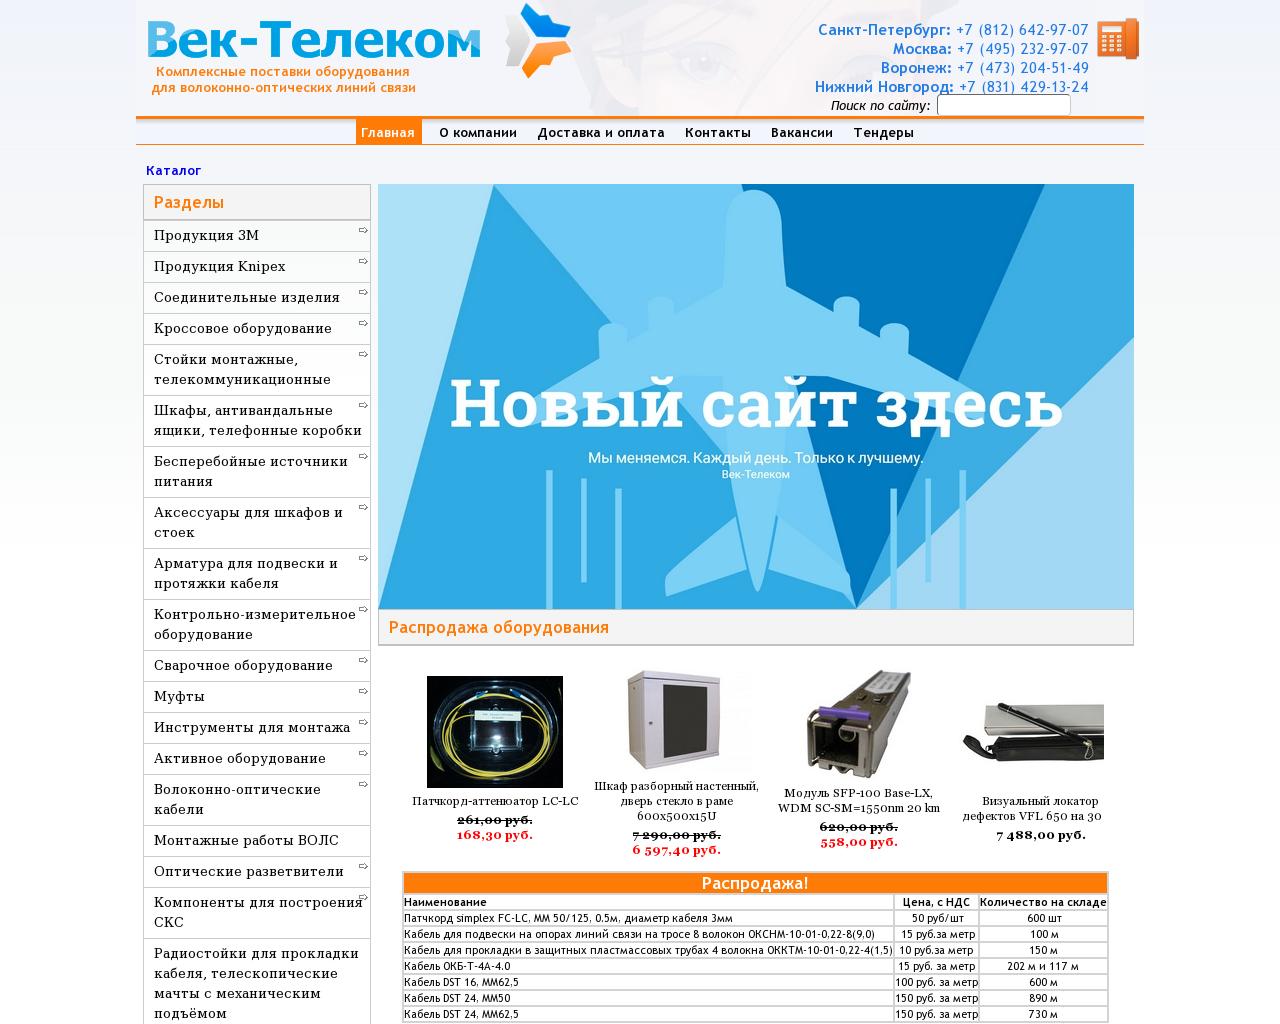 Изображение сайта век-телеком.рф в разрешении 1280x1024